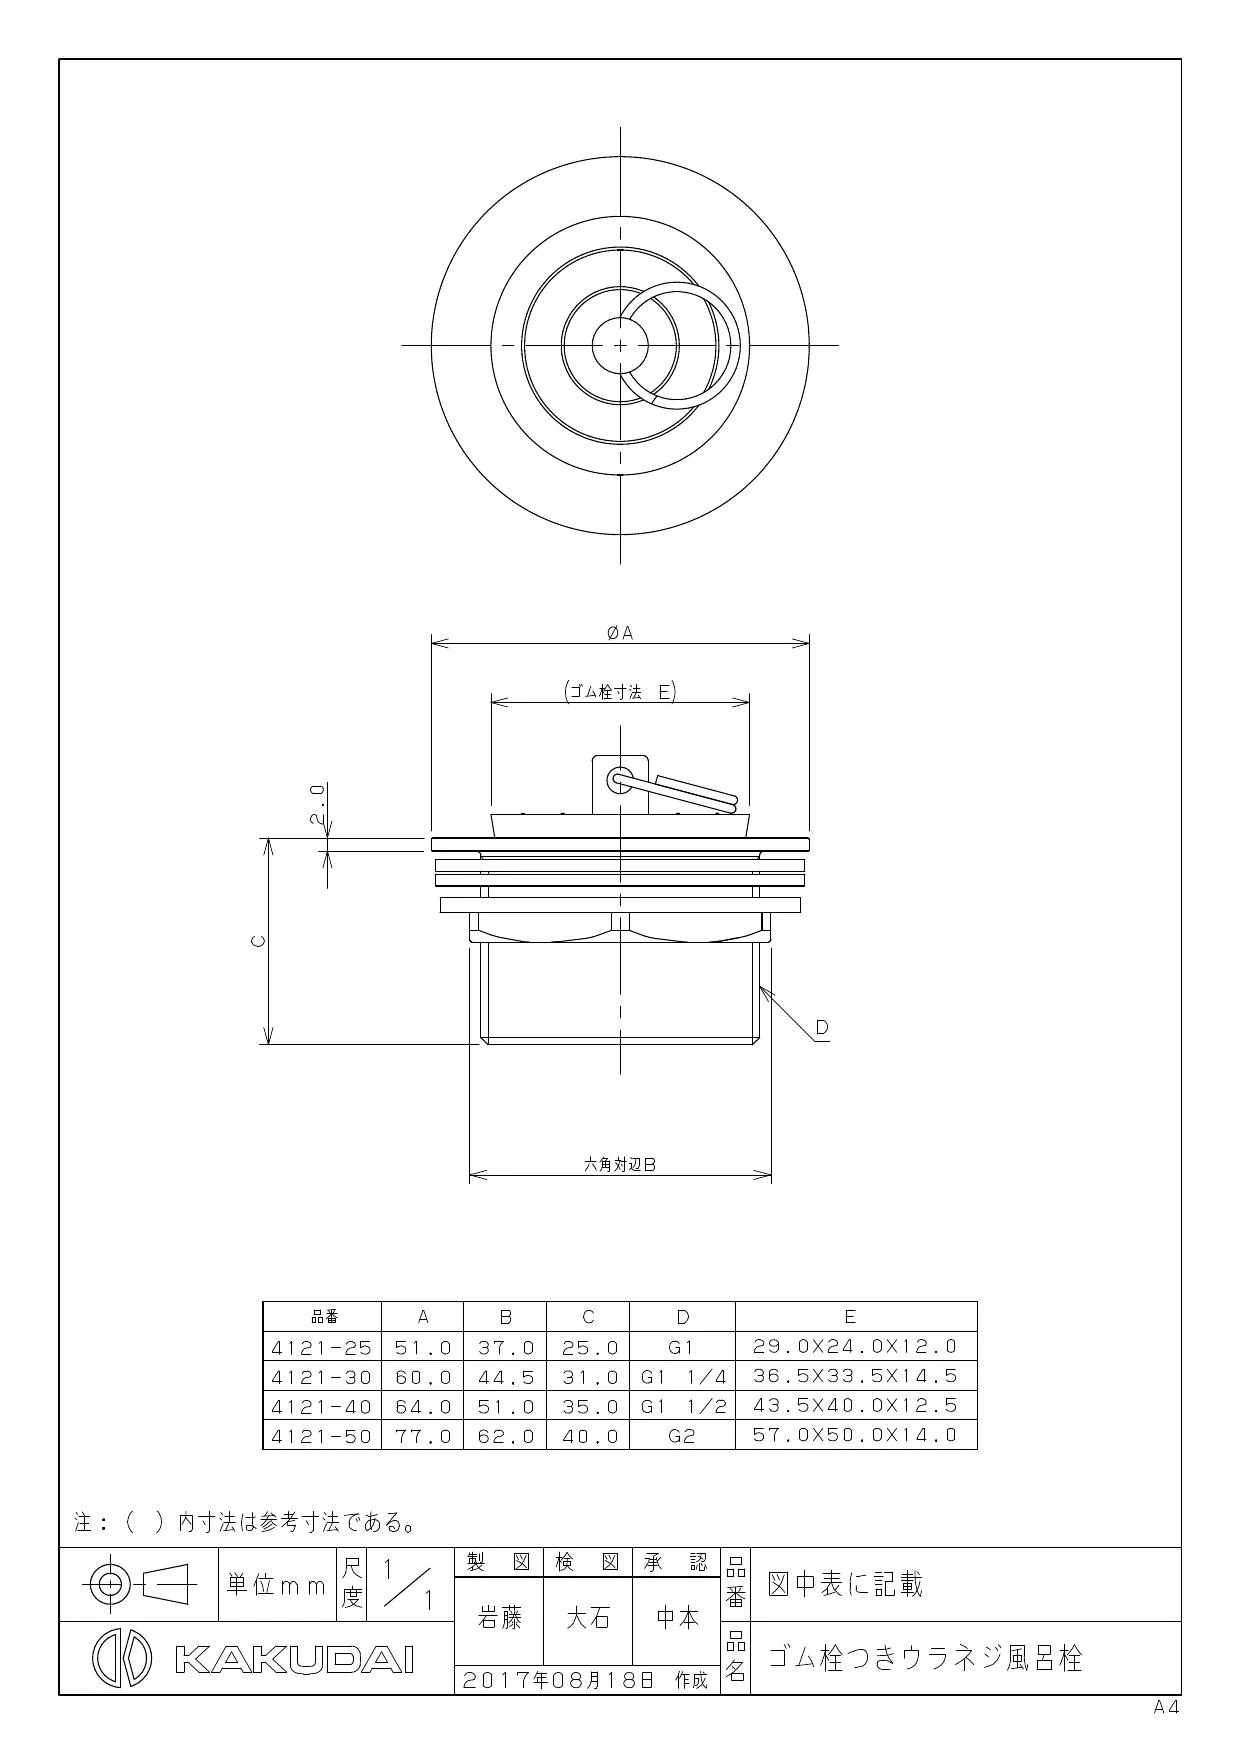 カクダイ 4121-40 商品図面|カクダイ 浴室部品の通販はプロストア ダイレクト